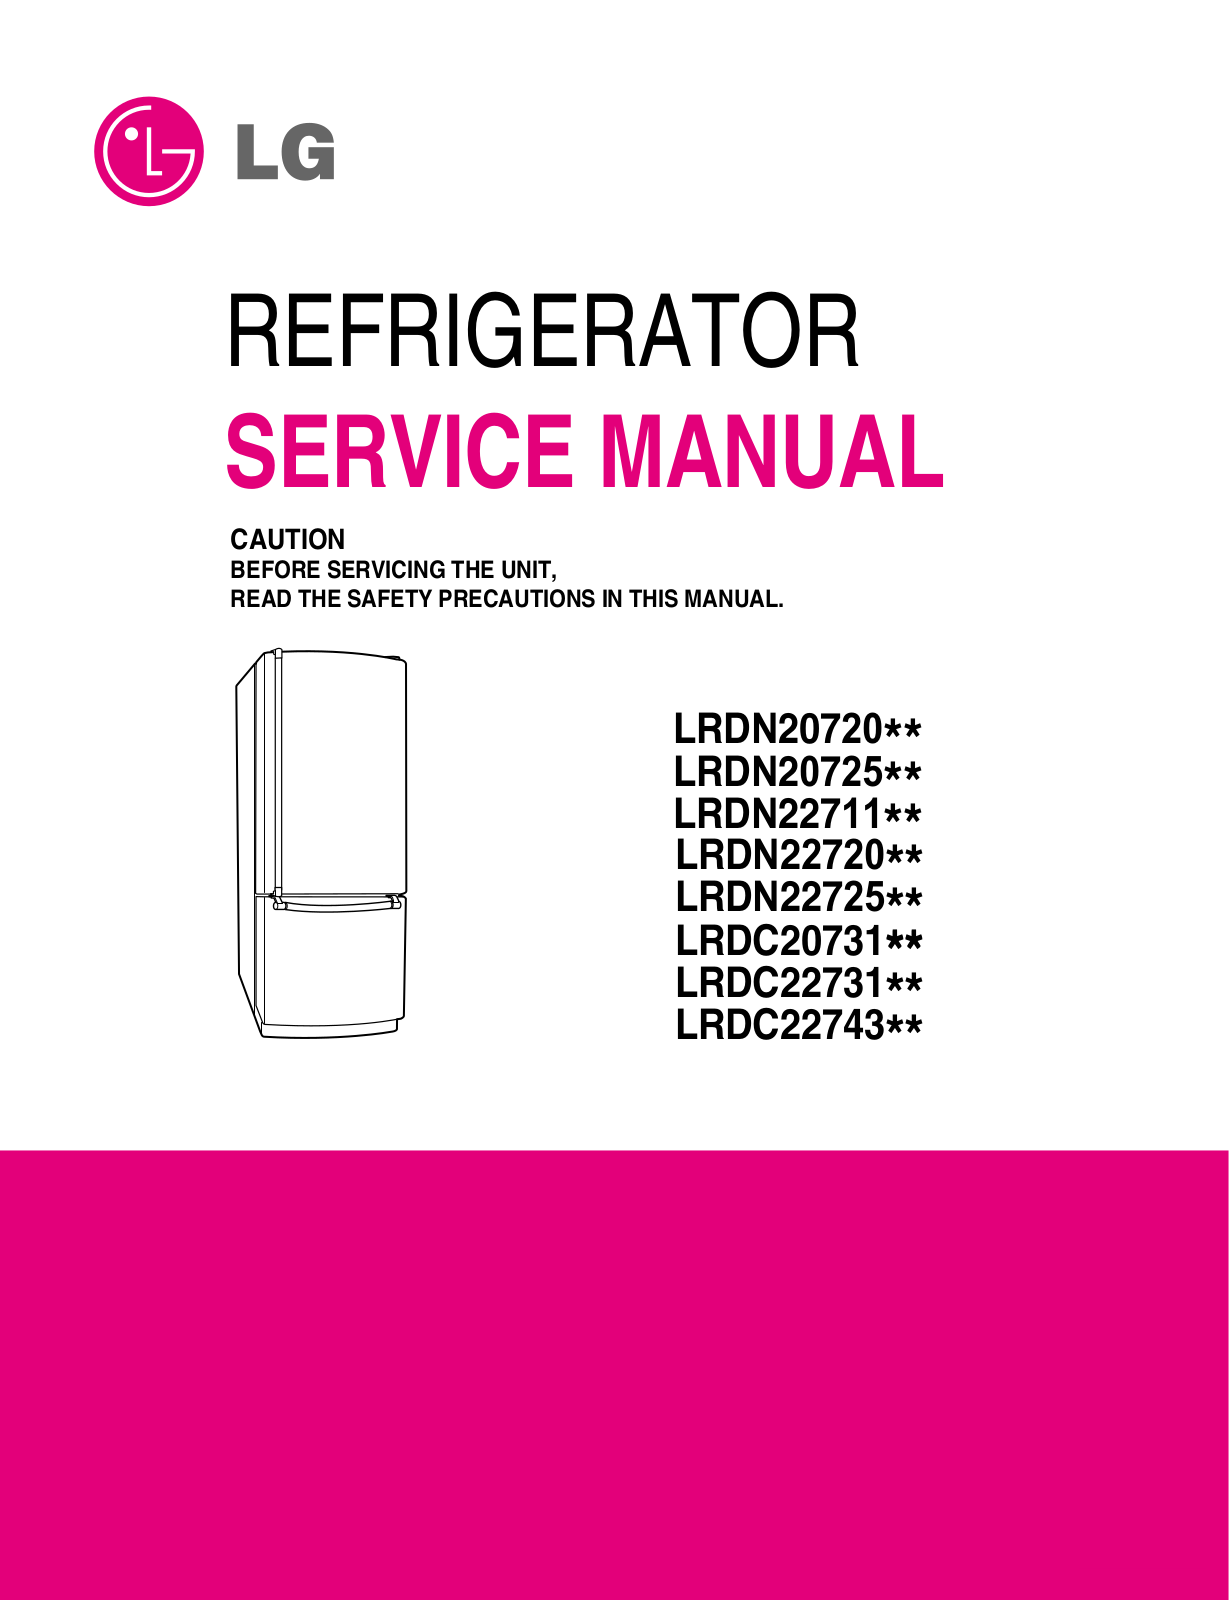 LG LRDN22720, LRDN22725, LRDN22711, LRDC22743, LRDC22731 User Manual